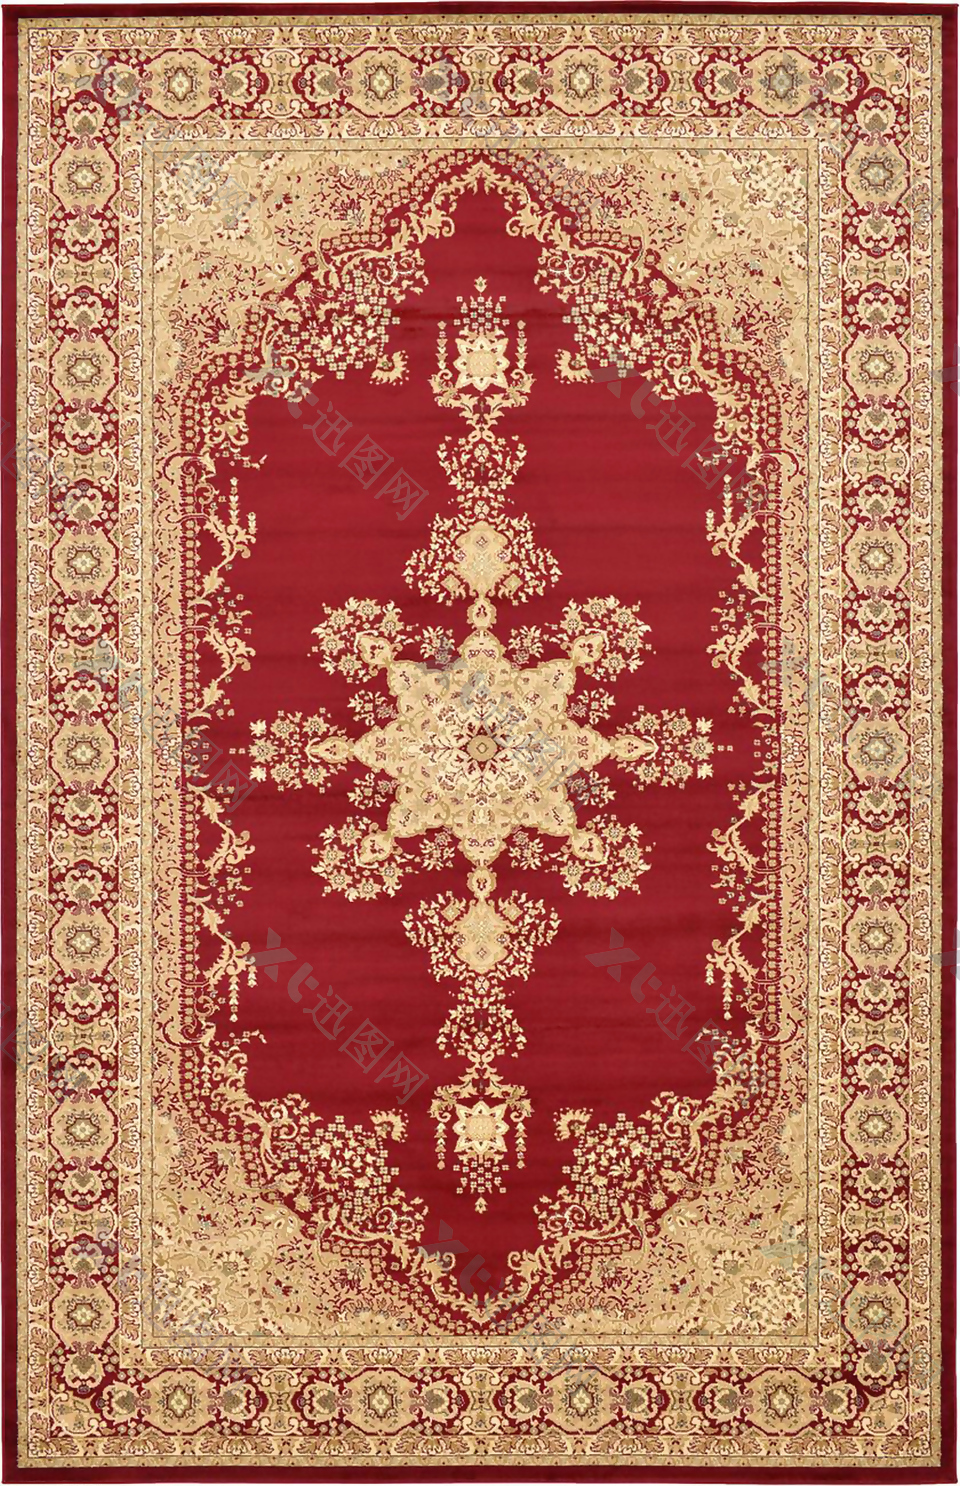 方形古红色典经典地毯jpg图片